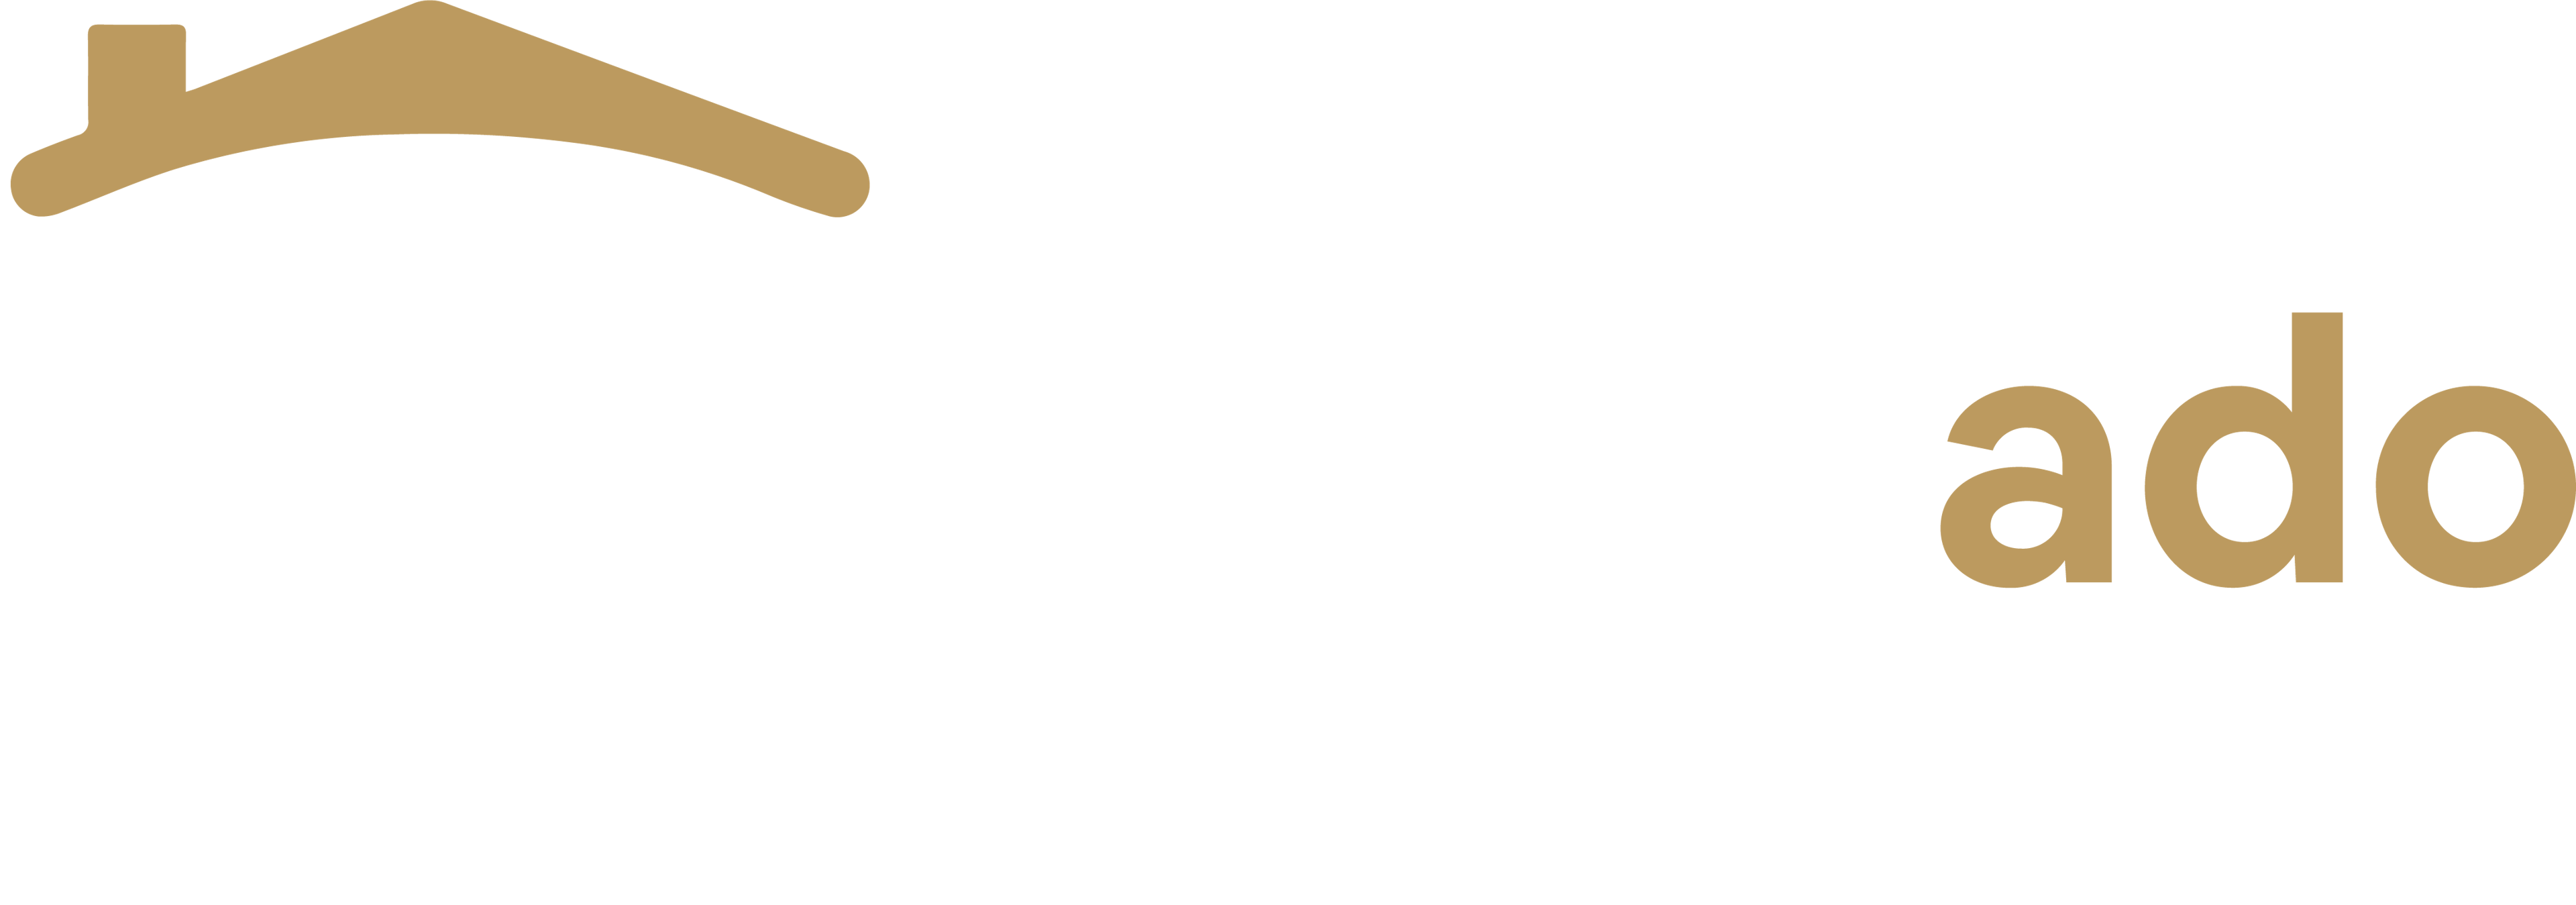 Elderado Logo